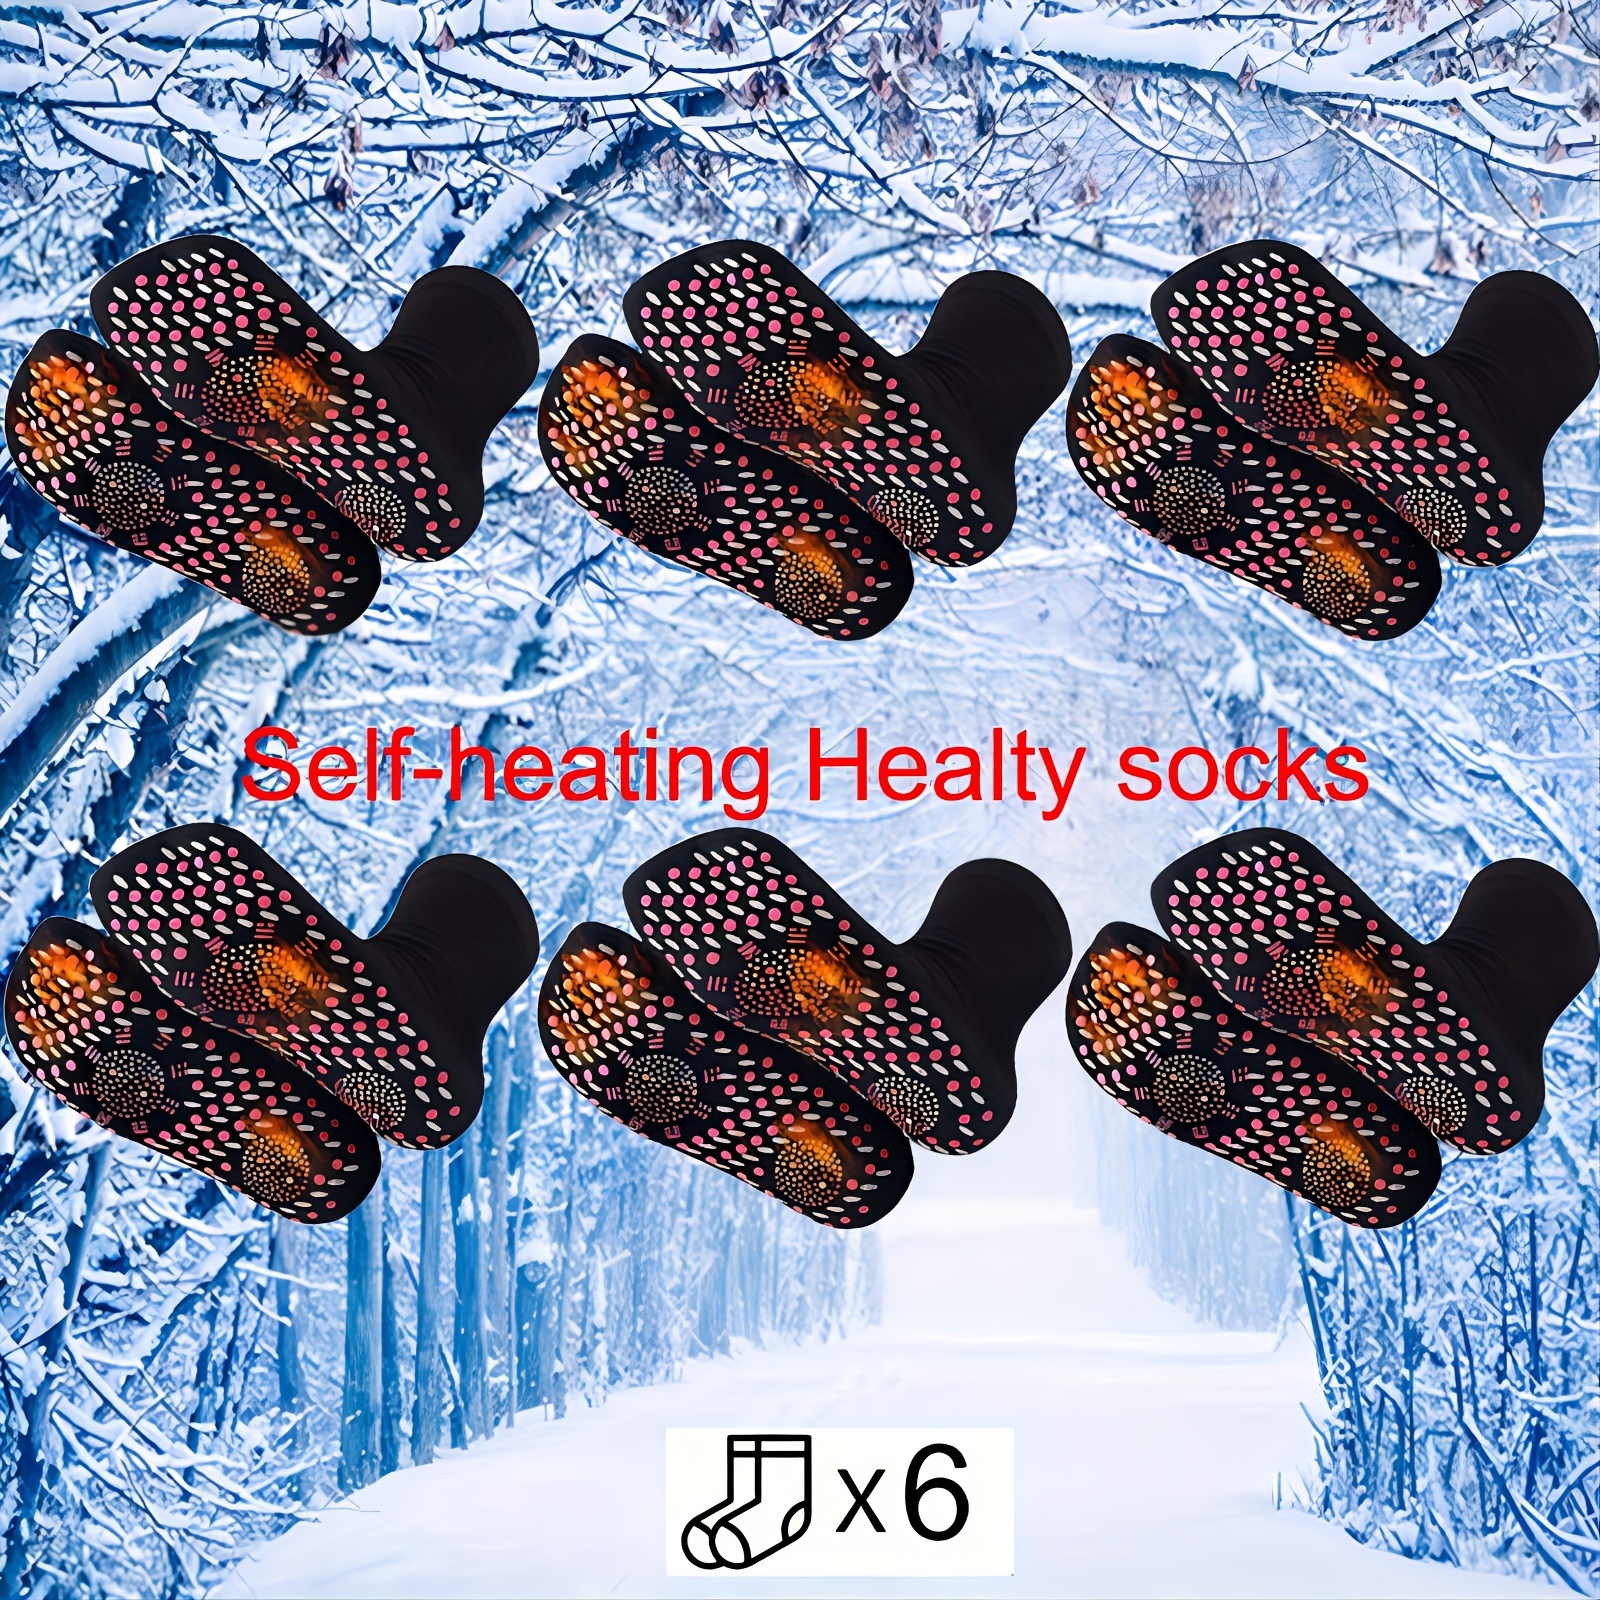 Chaussettes auto-chauffantes magnétiques – La Boutique Des Hommes